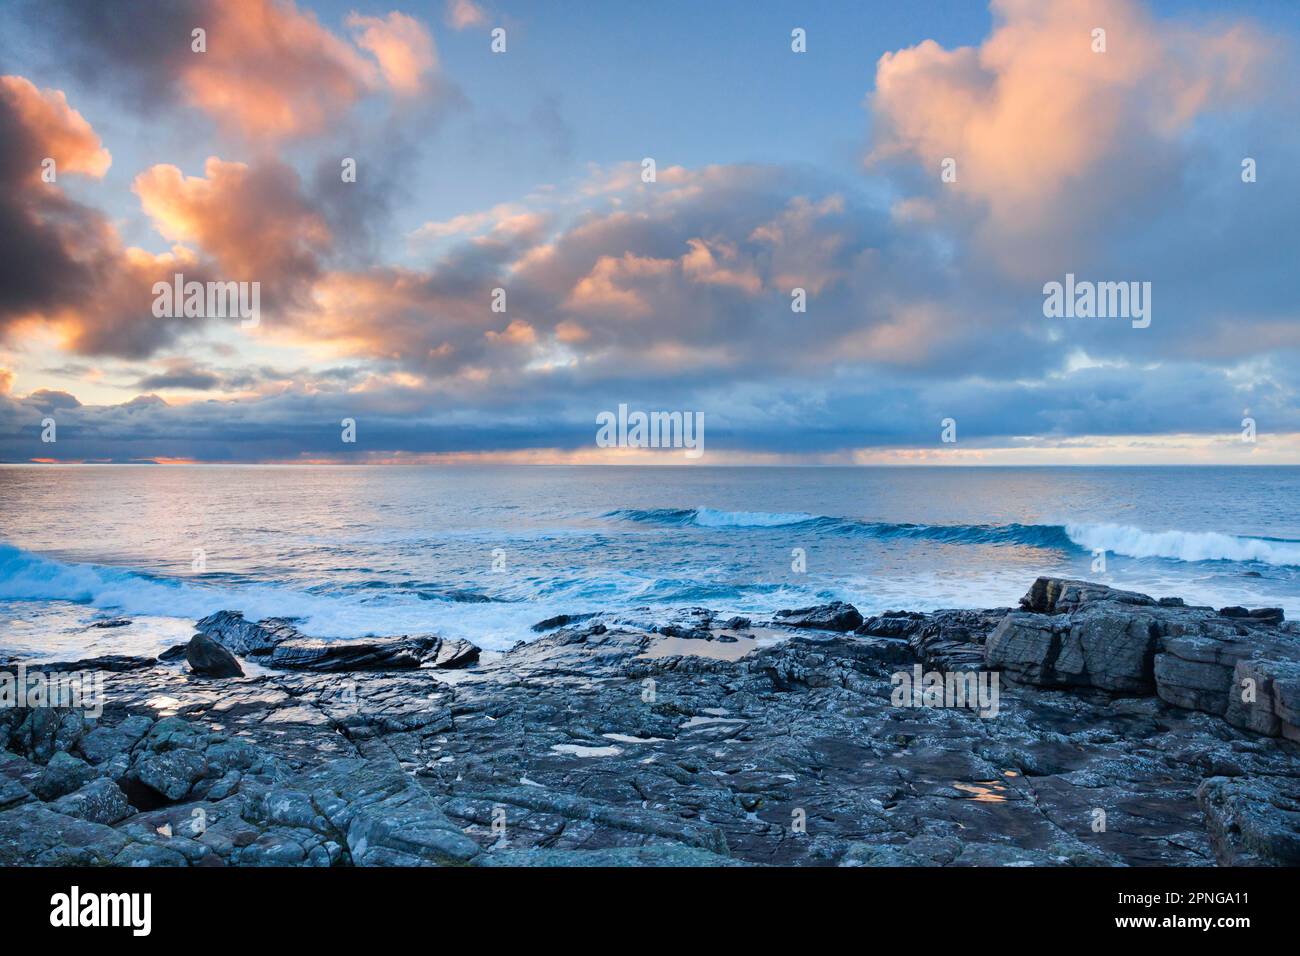 Tief liegende Regenwolken, die über das offene Wasser des blauen Atlantiks bei Sonnenuntergang driften, mit orangefarbenem, wolkigen Himmel, Nordwestküste Schottlands Stockfoto